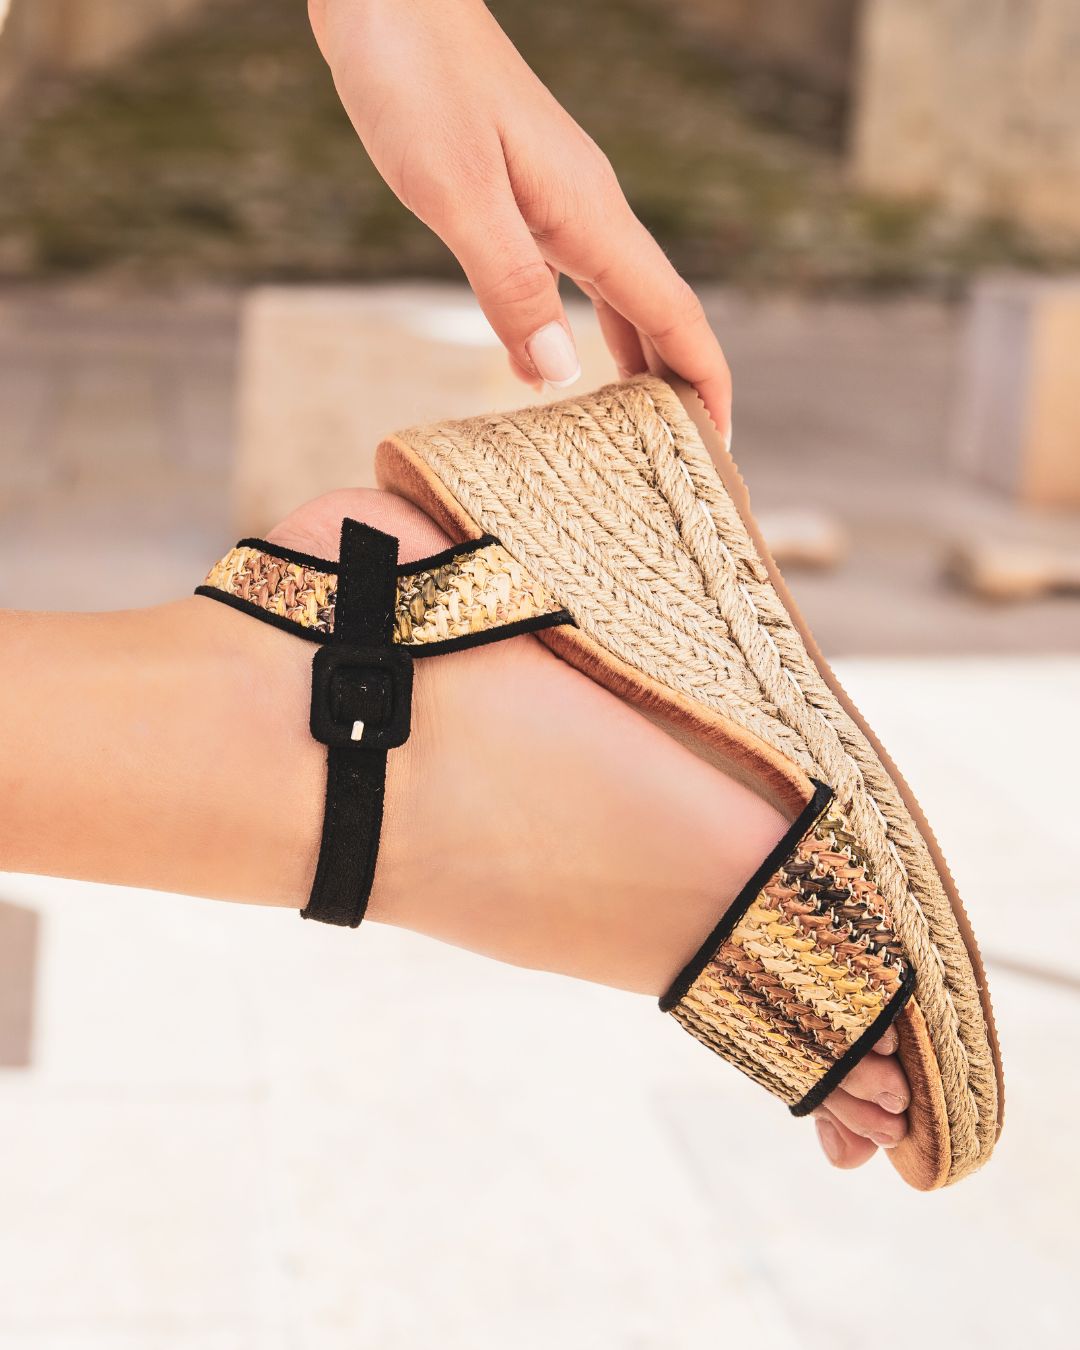 Sandale femme compensée noir - Sana - Casualmode.fr